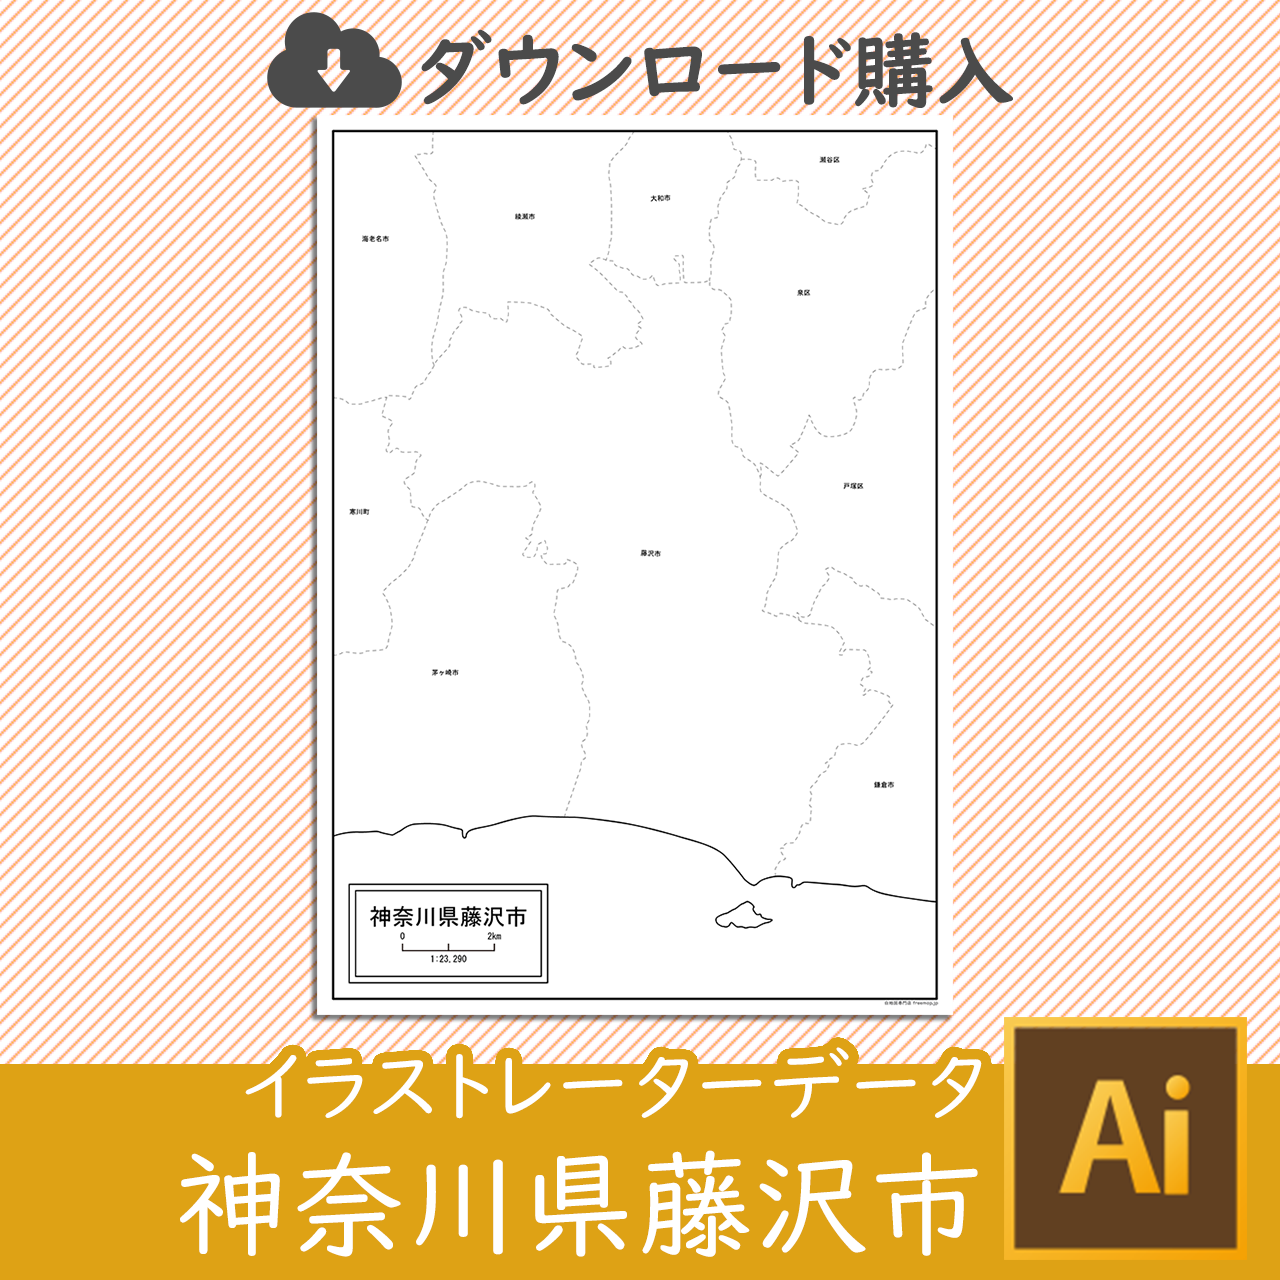 藤沢市のaiデータのサムネイル画像